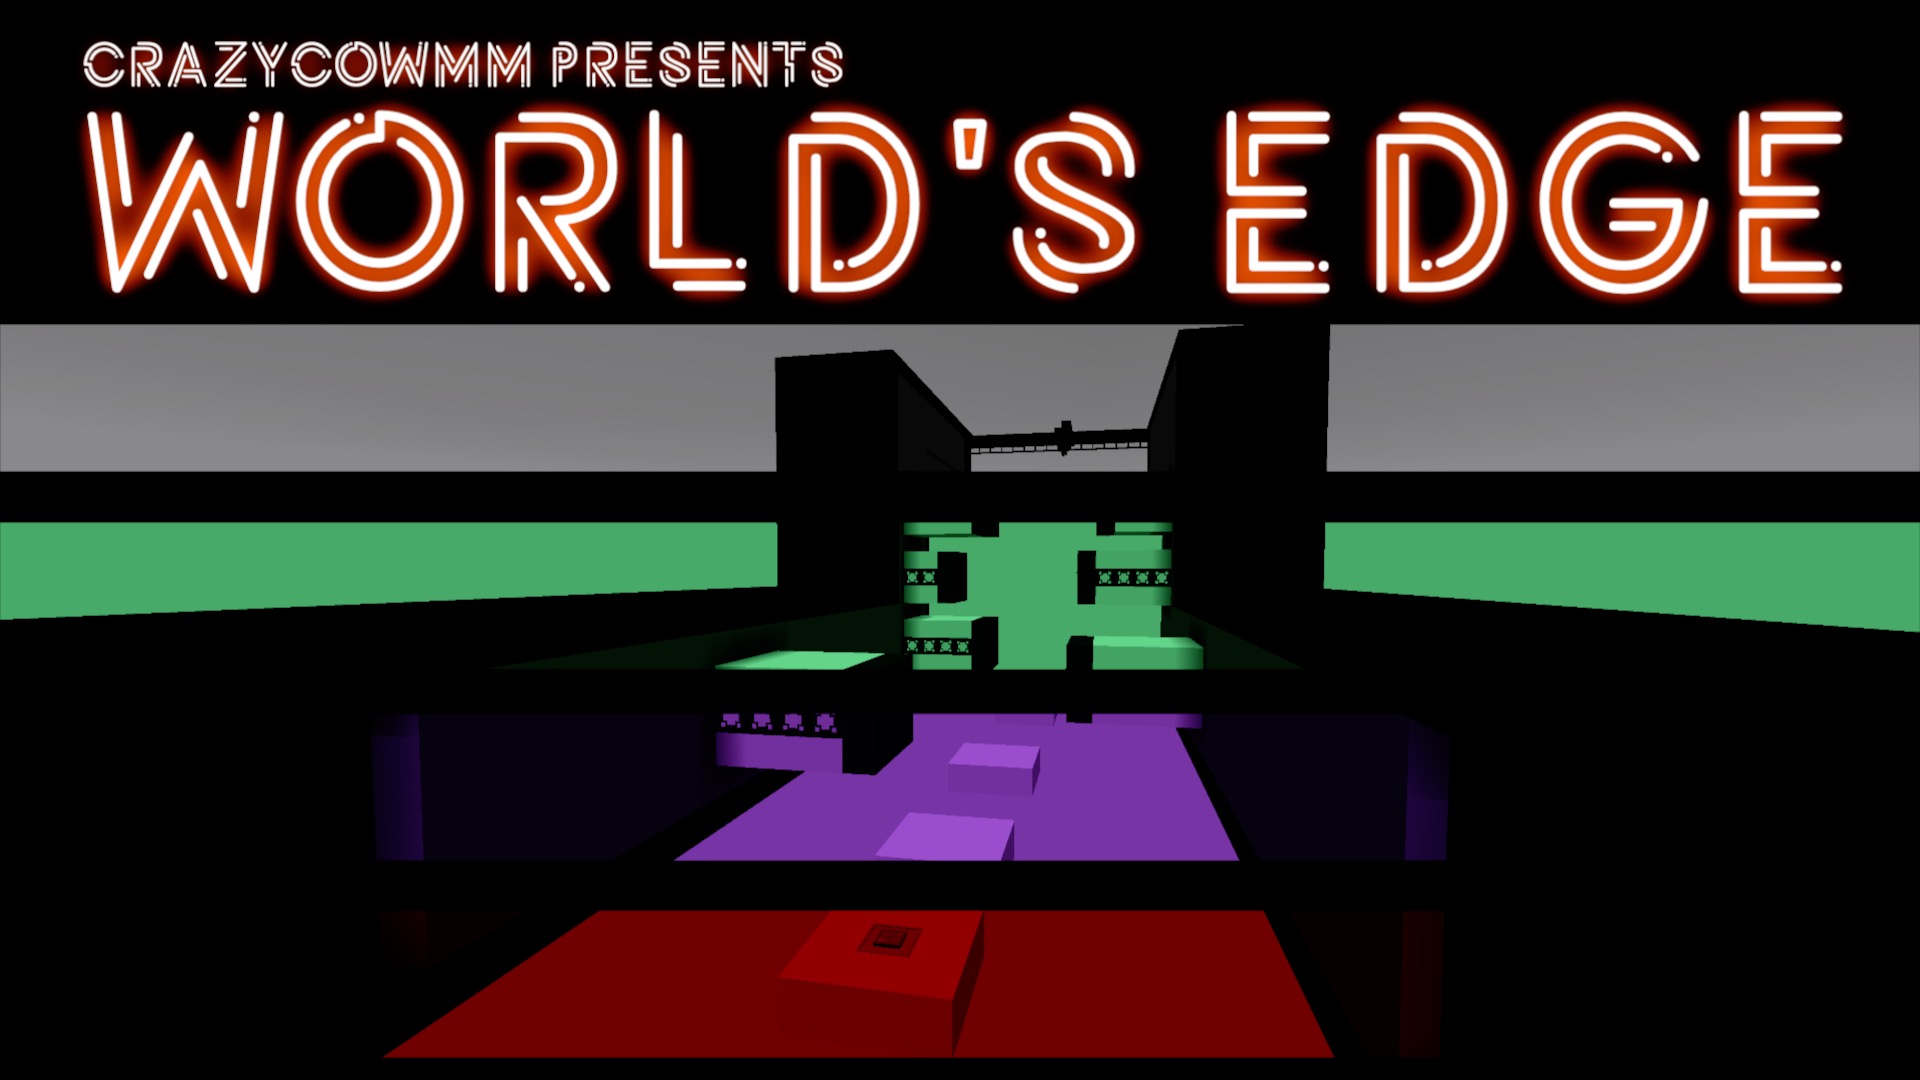 CrazyCowMM presents, World's Edge